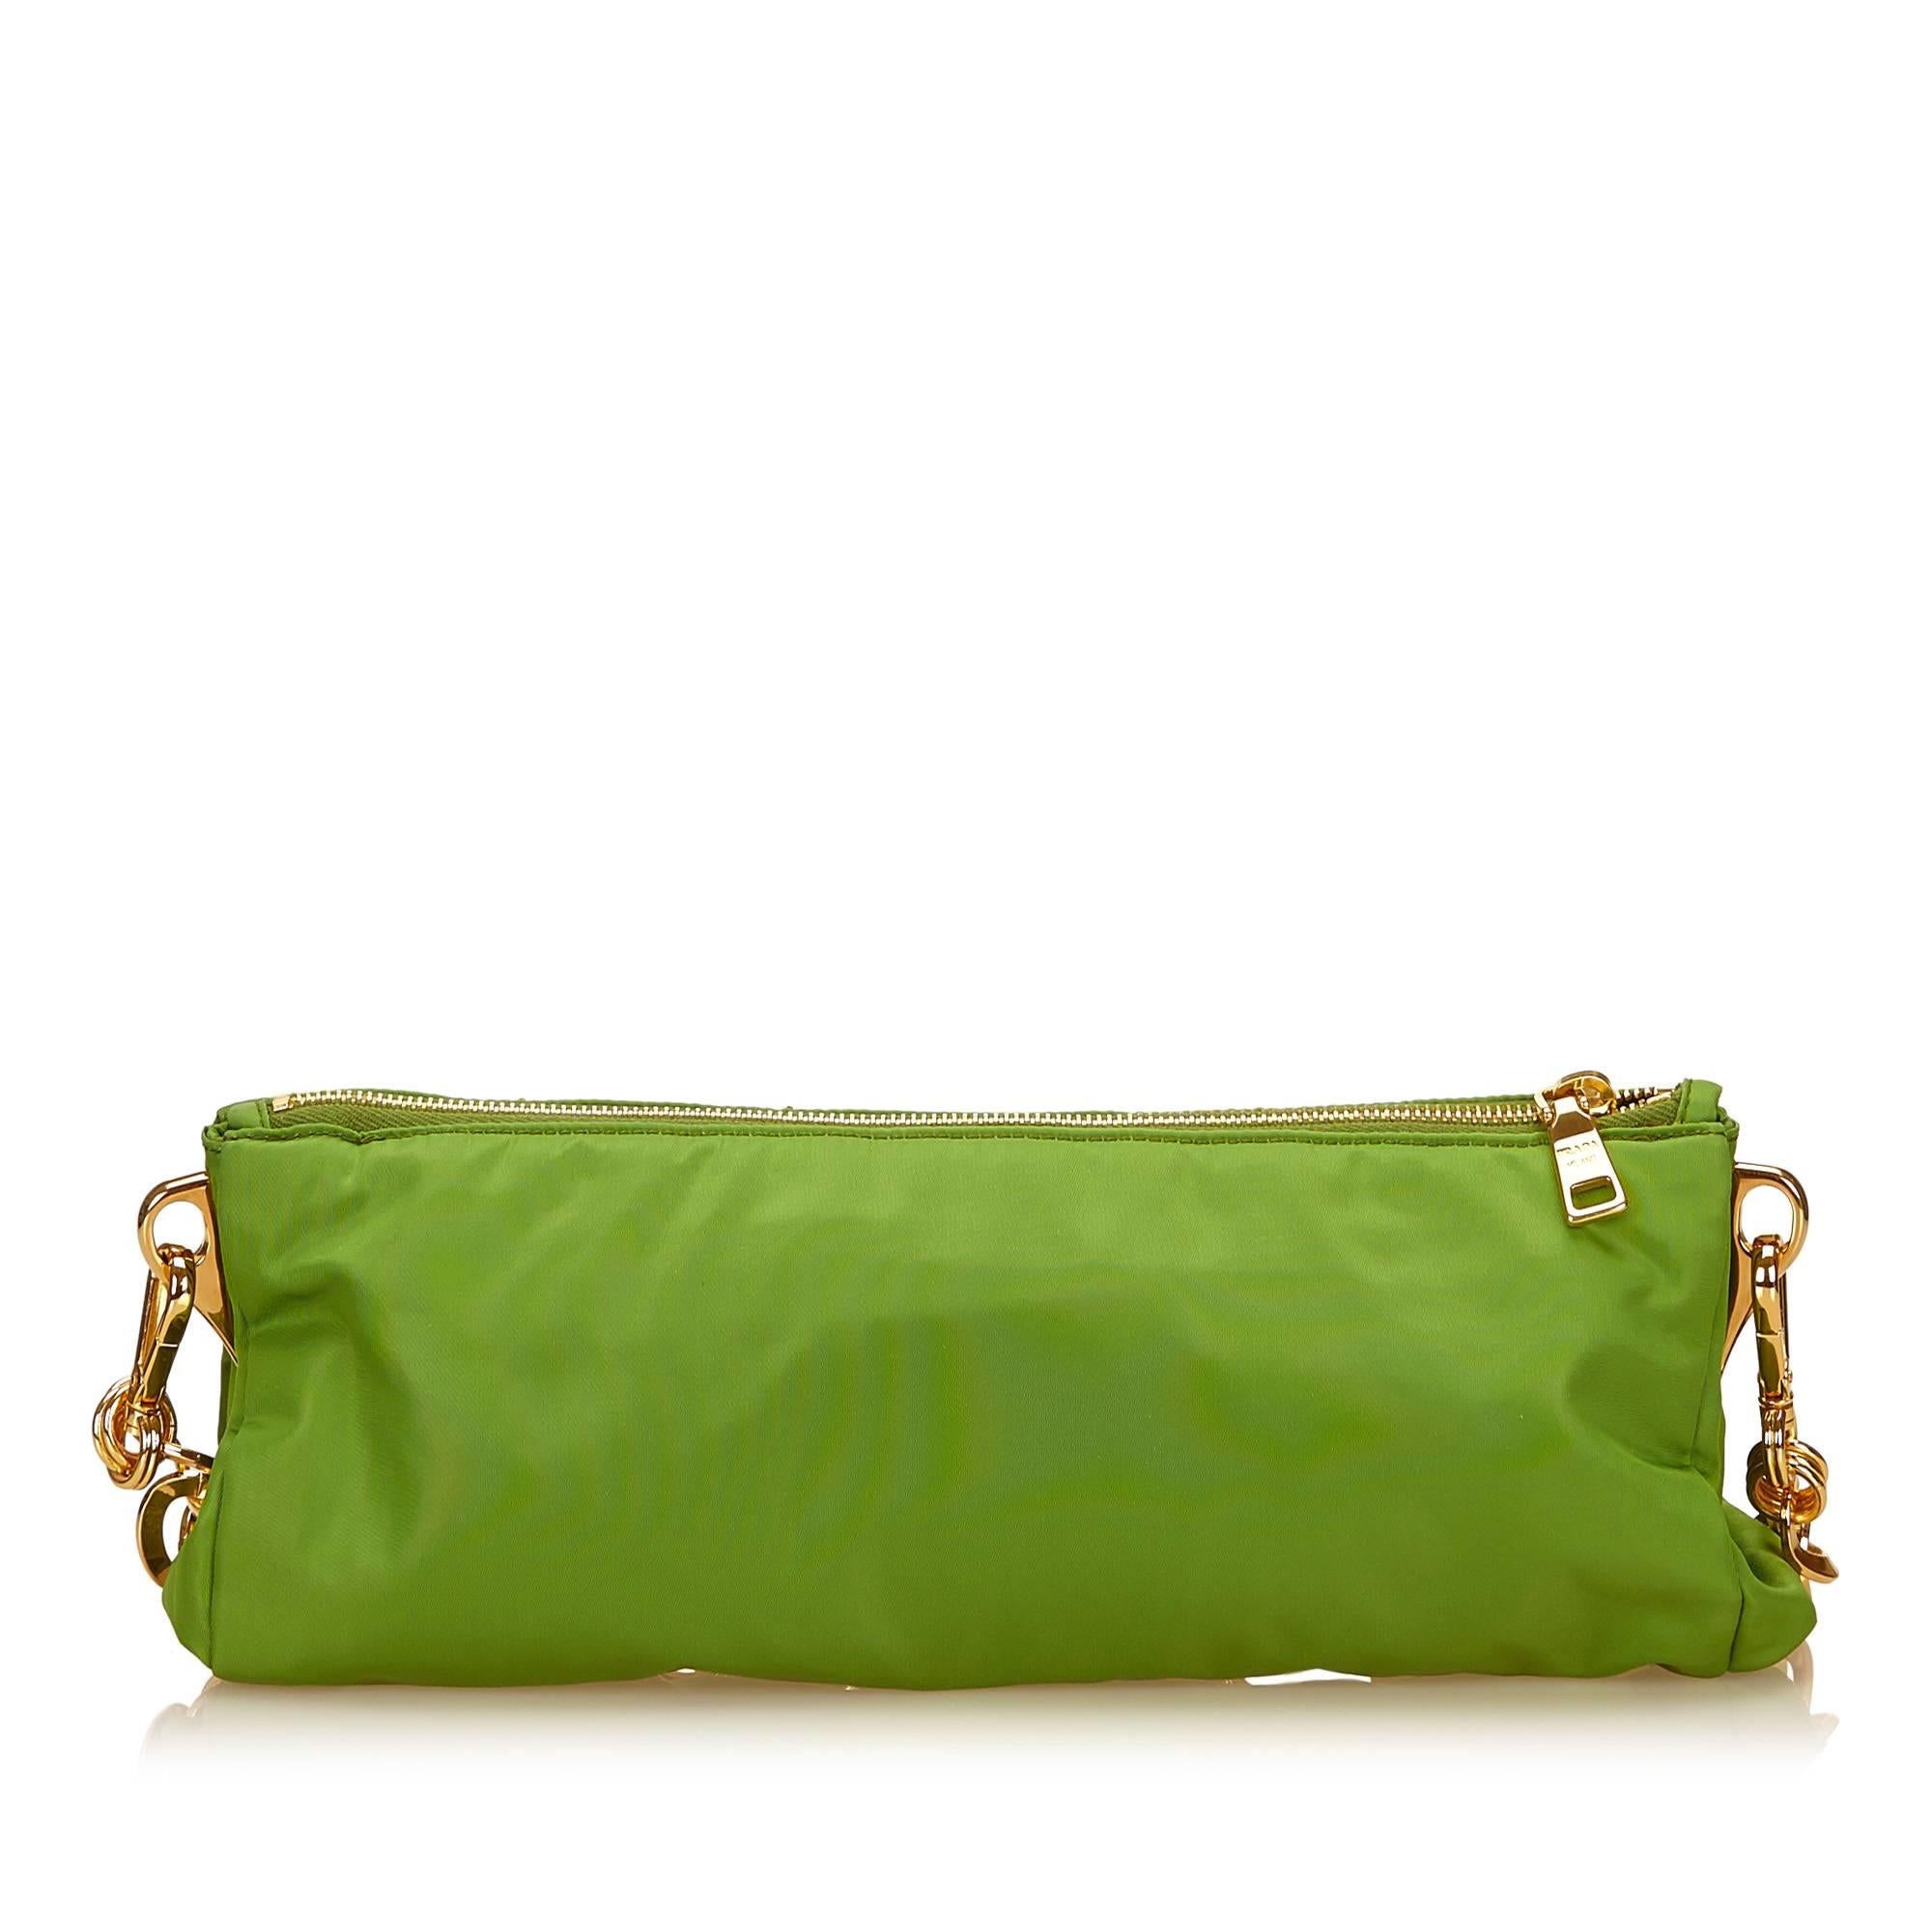 Women's or Men's Prada Green Studded Nylon Handbag